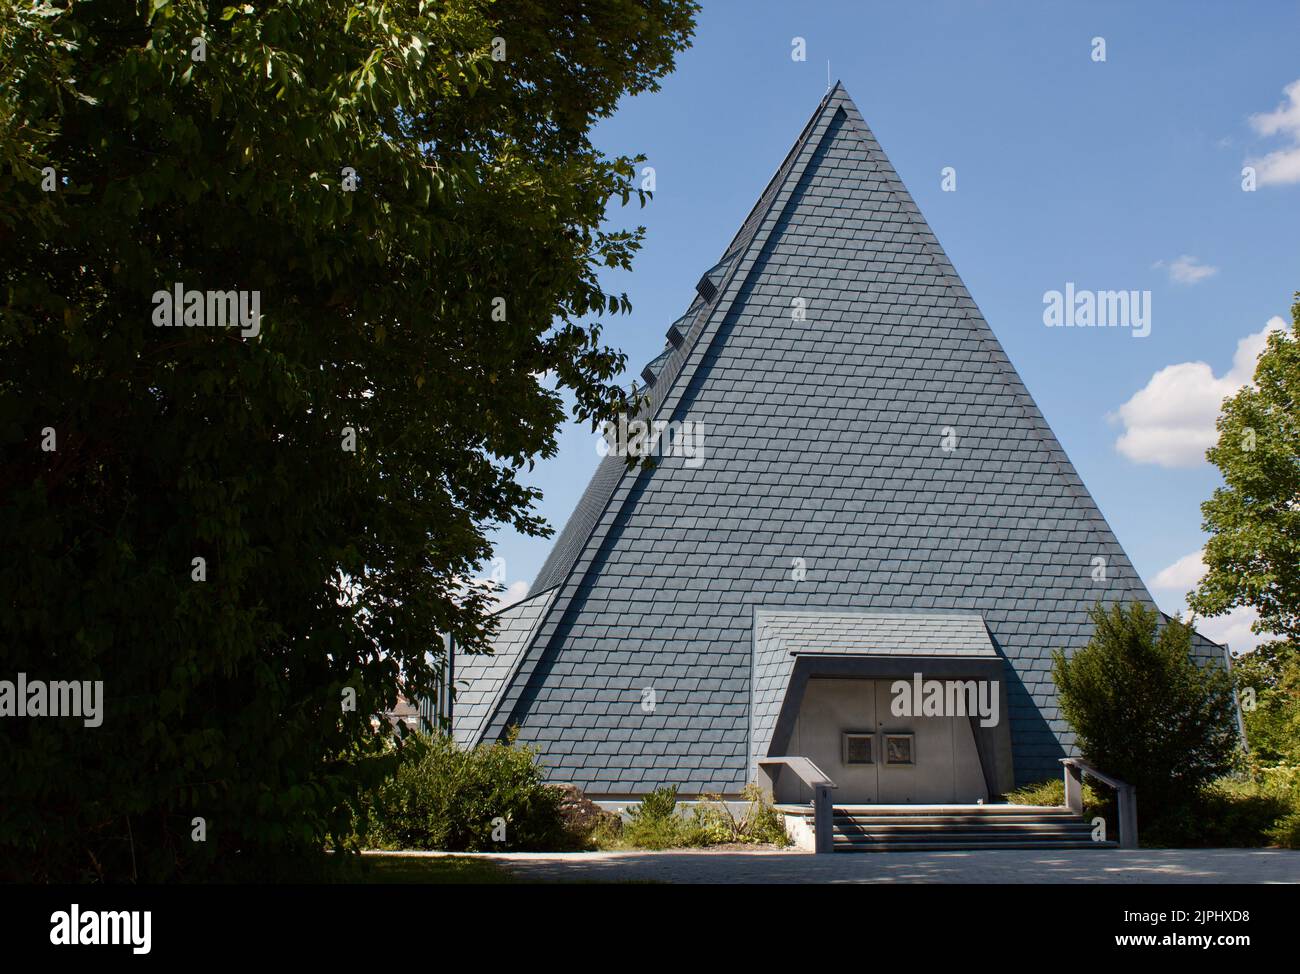 Gebäude sieht aus wie eine Pyramide, an einem sonnigen tag Stock Photo